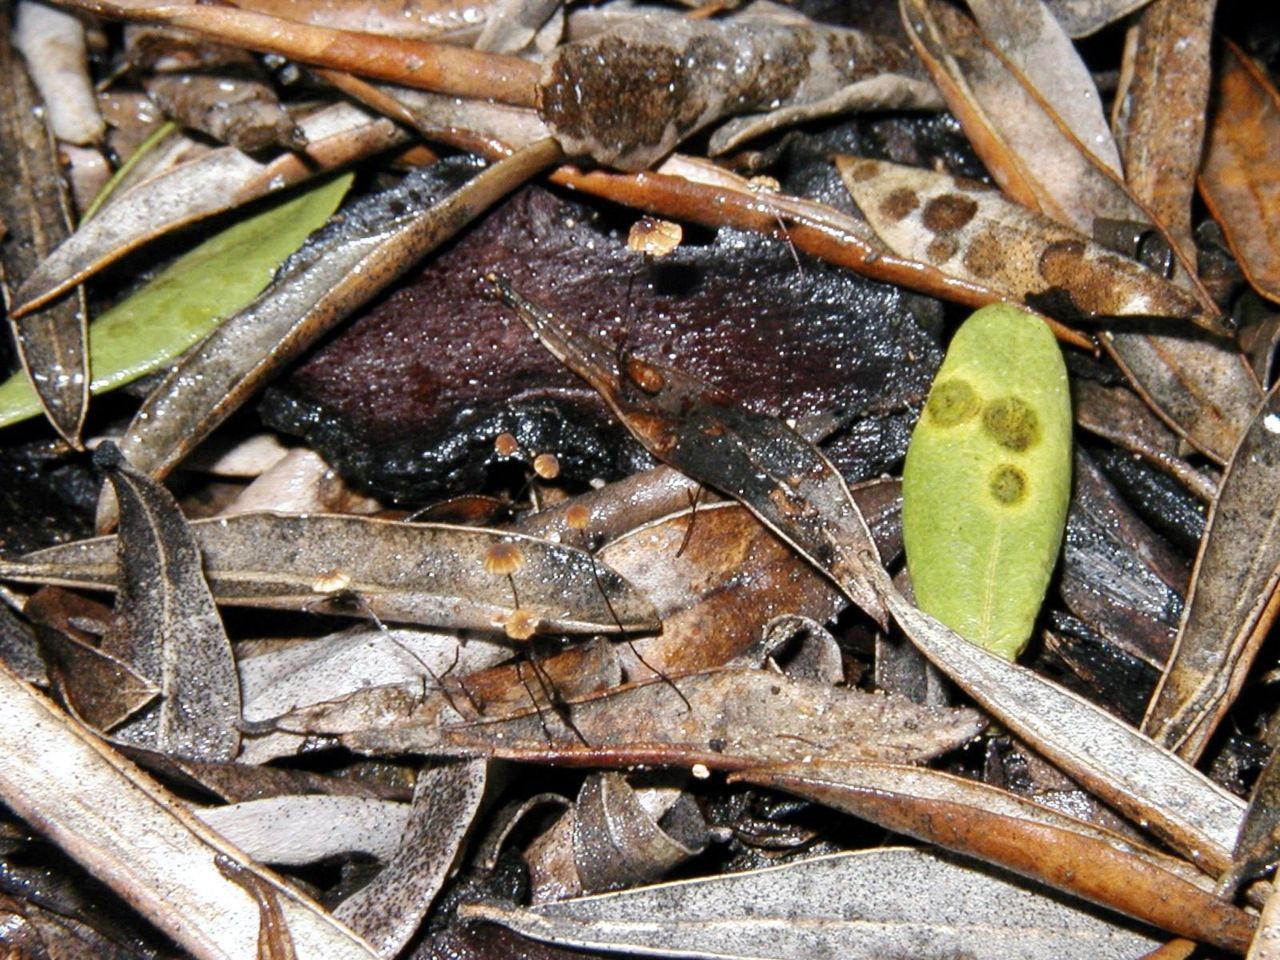 Twee nieuwe soorten op een plaatje. De kleine hoedjes op dode bladeren, ronde vlekken op de groene blaadjes. (foto: Eddie Lavreys)